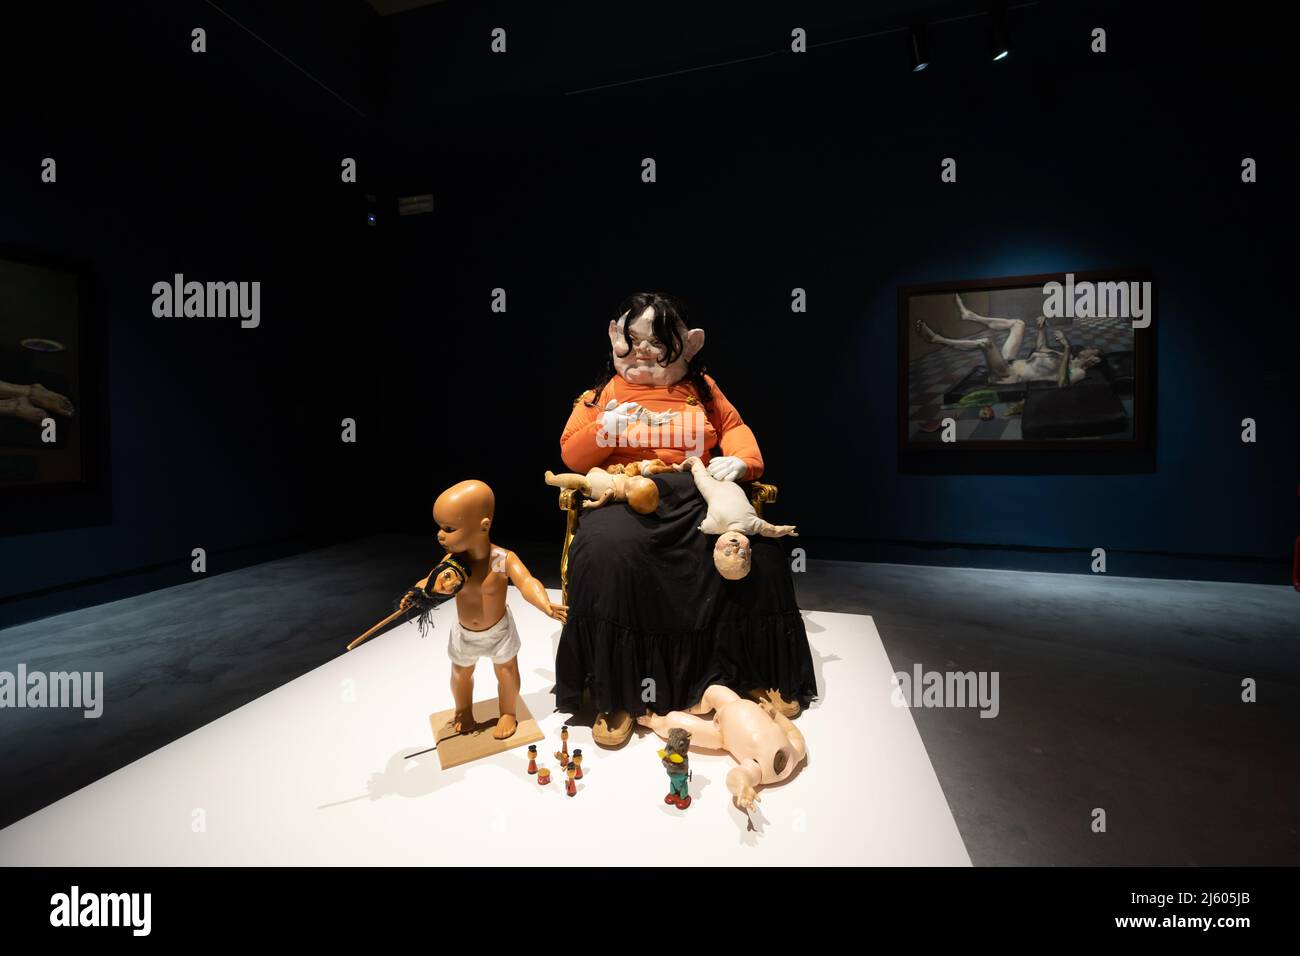 Paula Rego (1935, Portugal), Gluttony, 2019, de la serie “Los siete pecados mortales”. 59th Bienal de Arte de Venecia 2022, exposición del Pabellón Central de Giardini Foto de stock